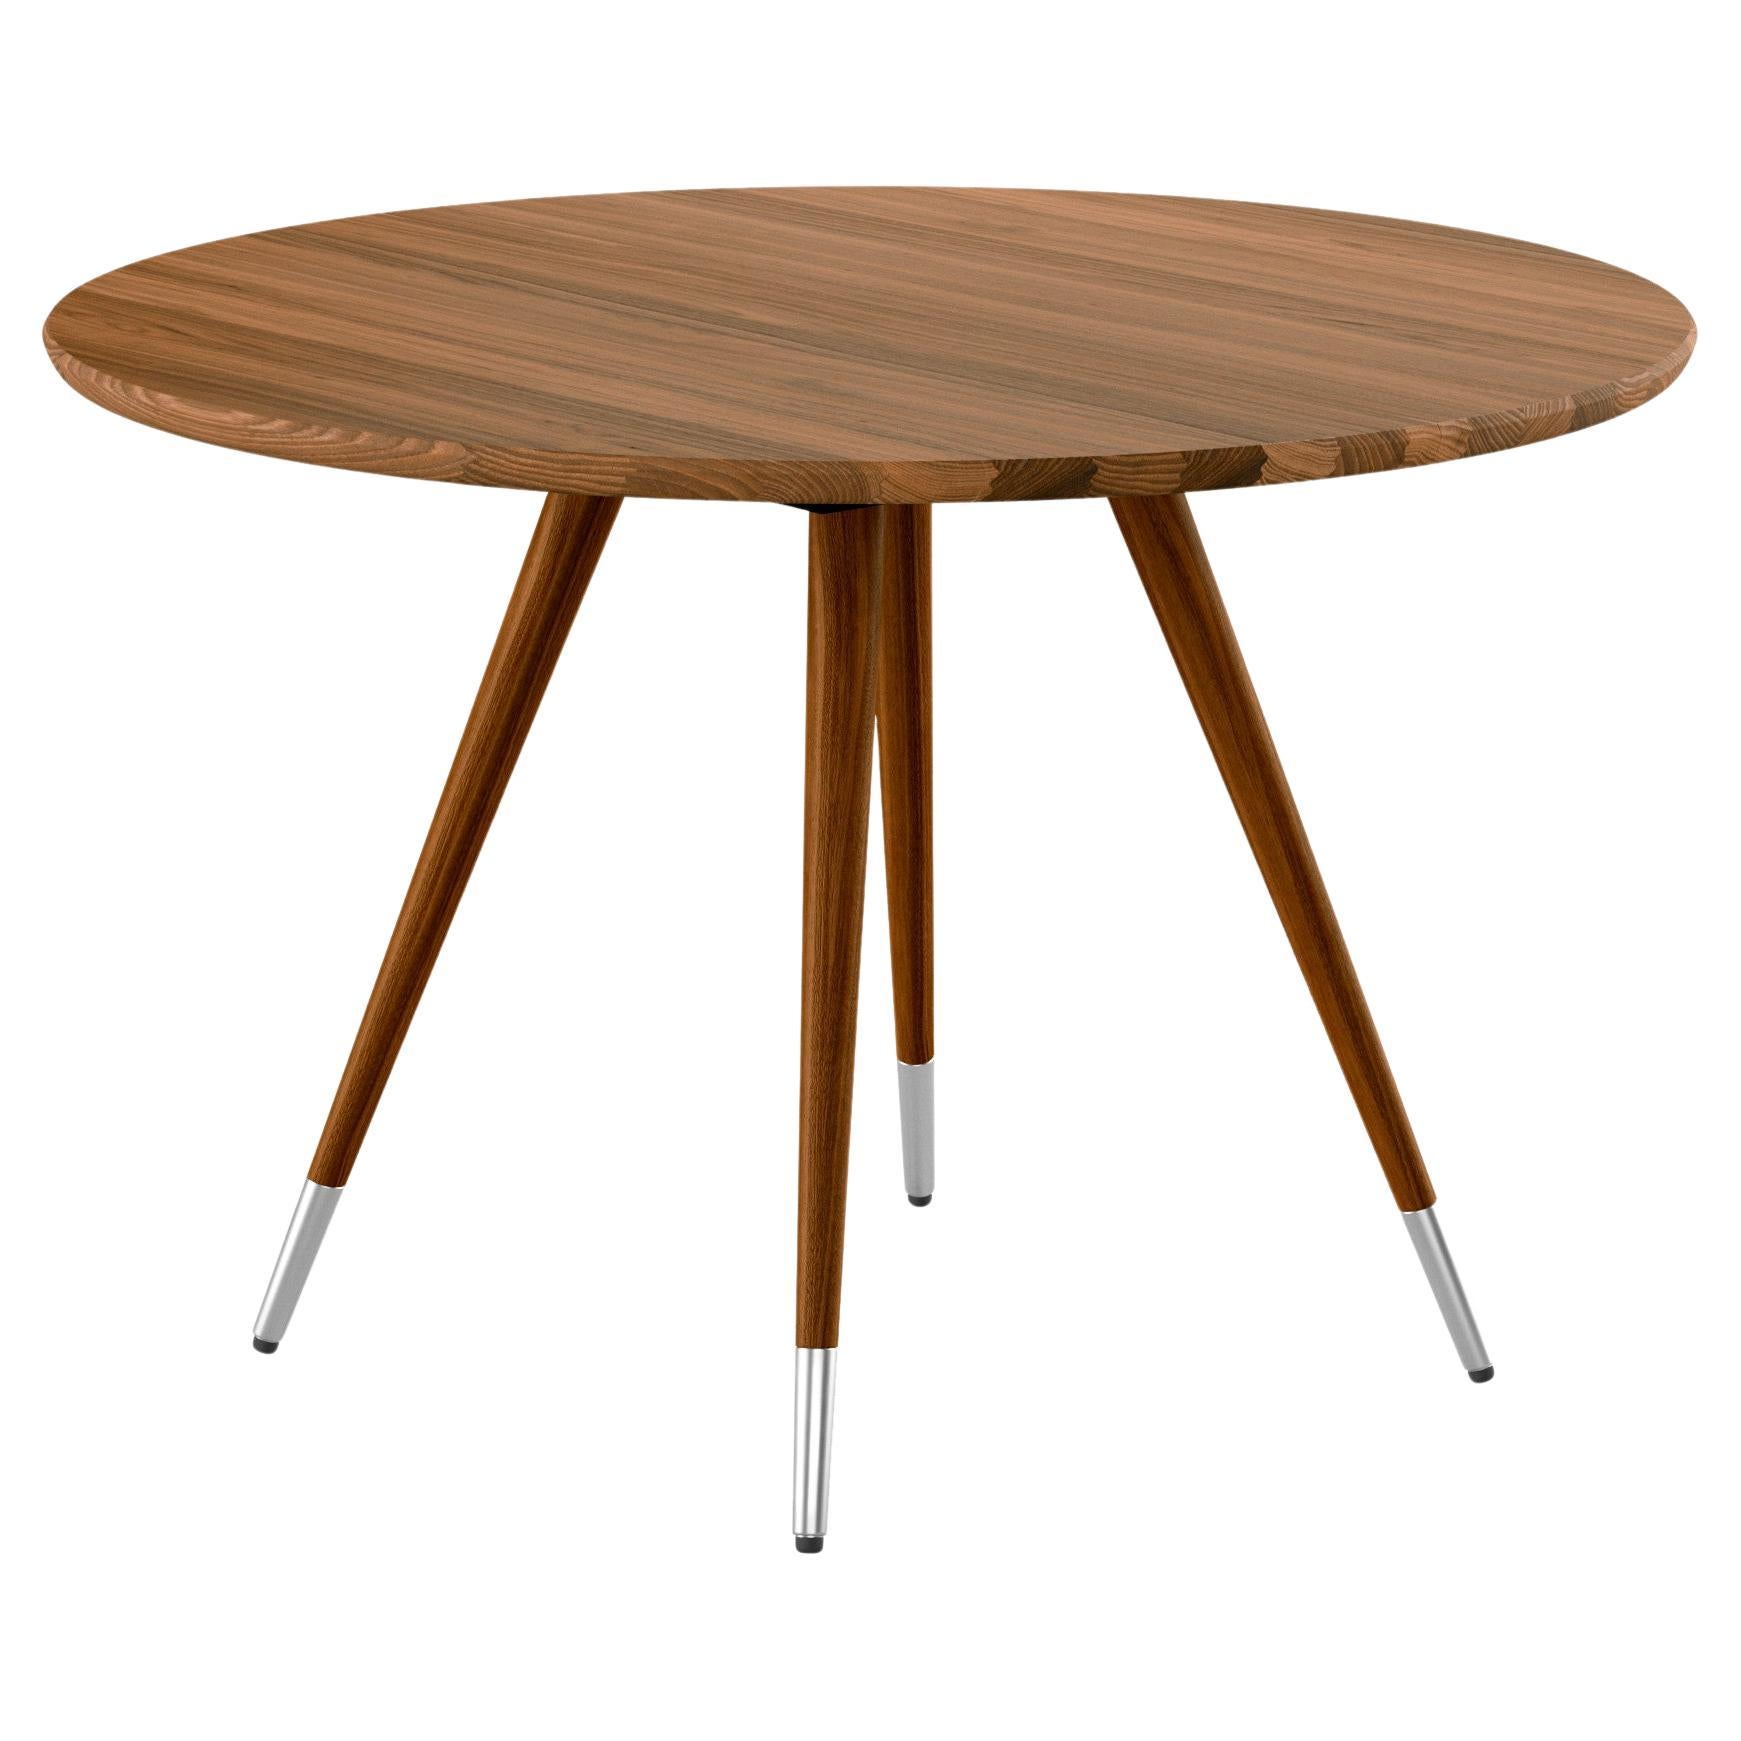 GM3900 Edge Round Table, Walnut - Design by Nissen & Gehl MDD For Sale